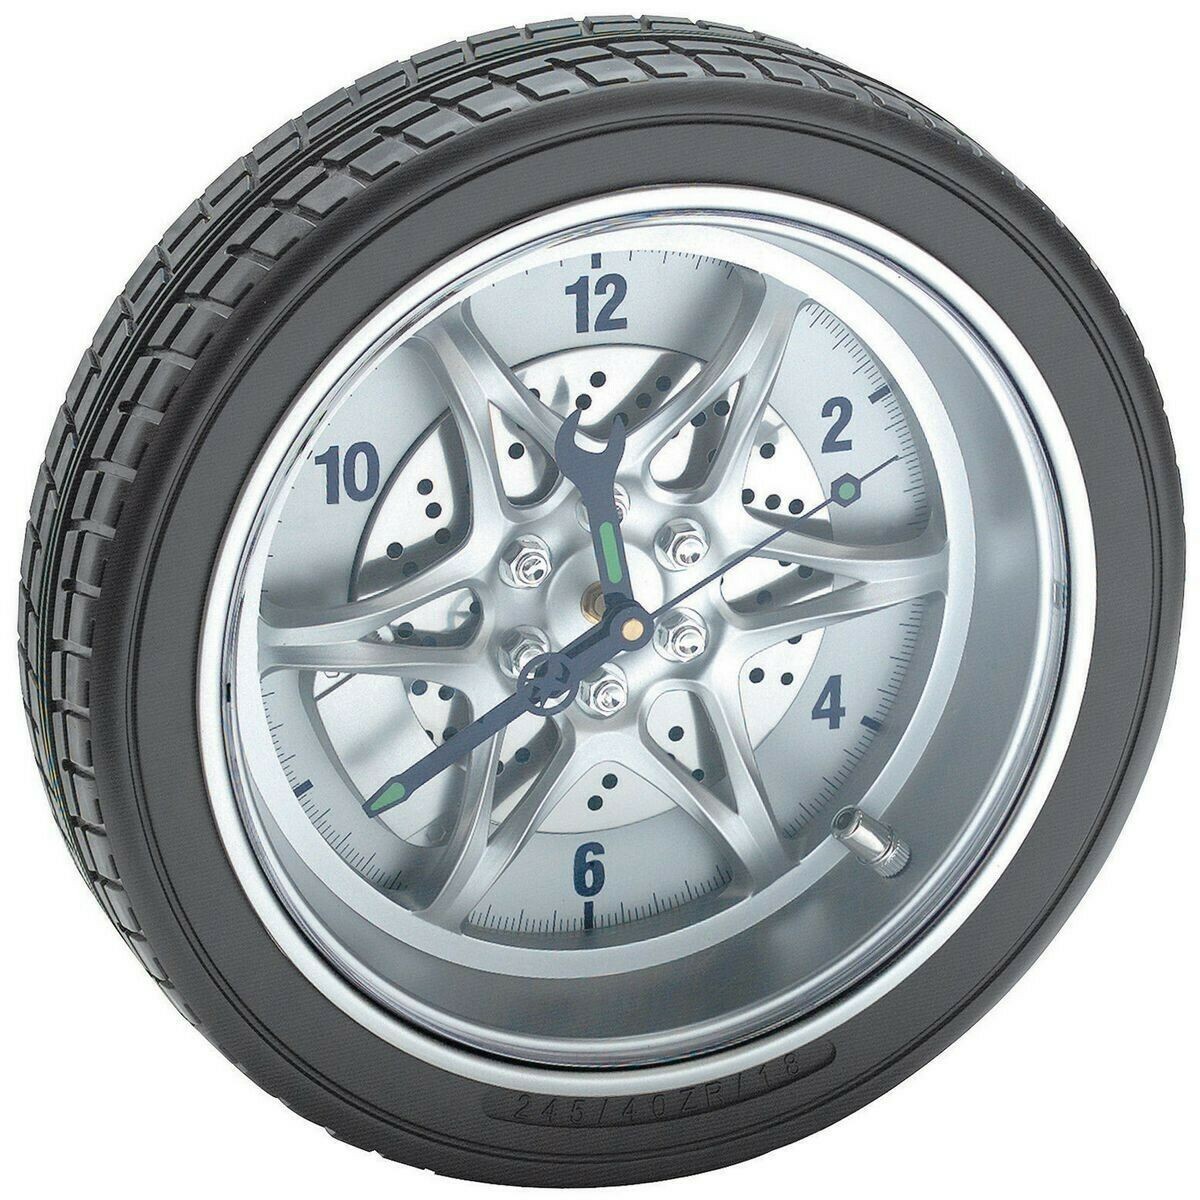 Часы 14 34. Часы колесо автомобильное. Часы настенные "колесо". Часы колесо автомобильное настенные. Часы настенные в виде колеса.